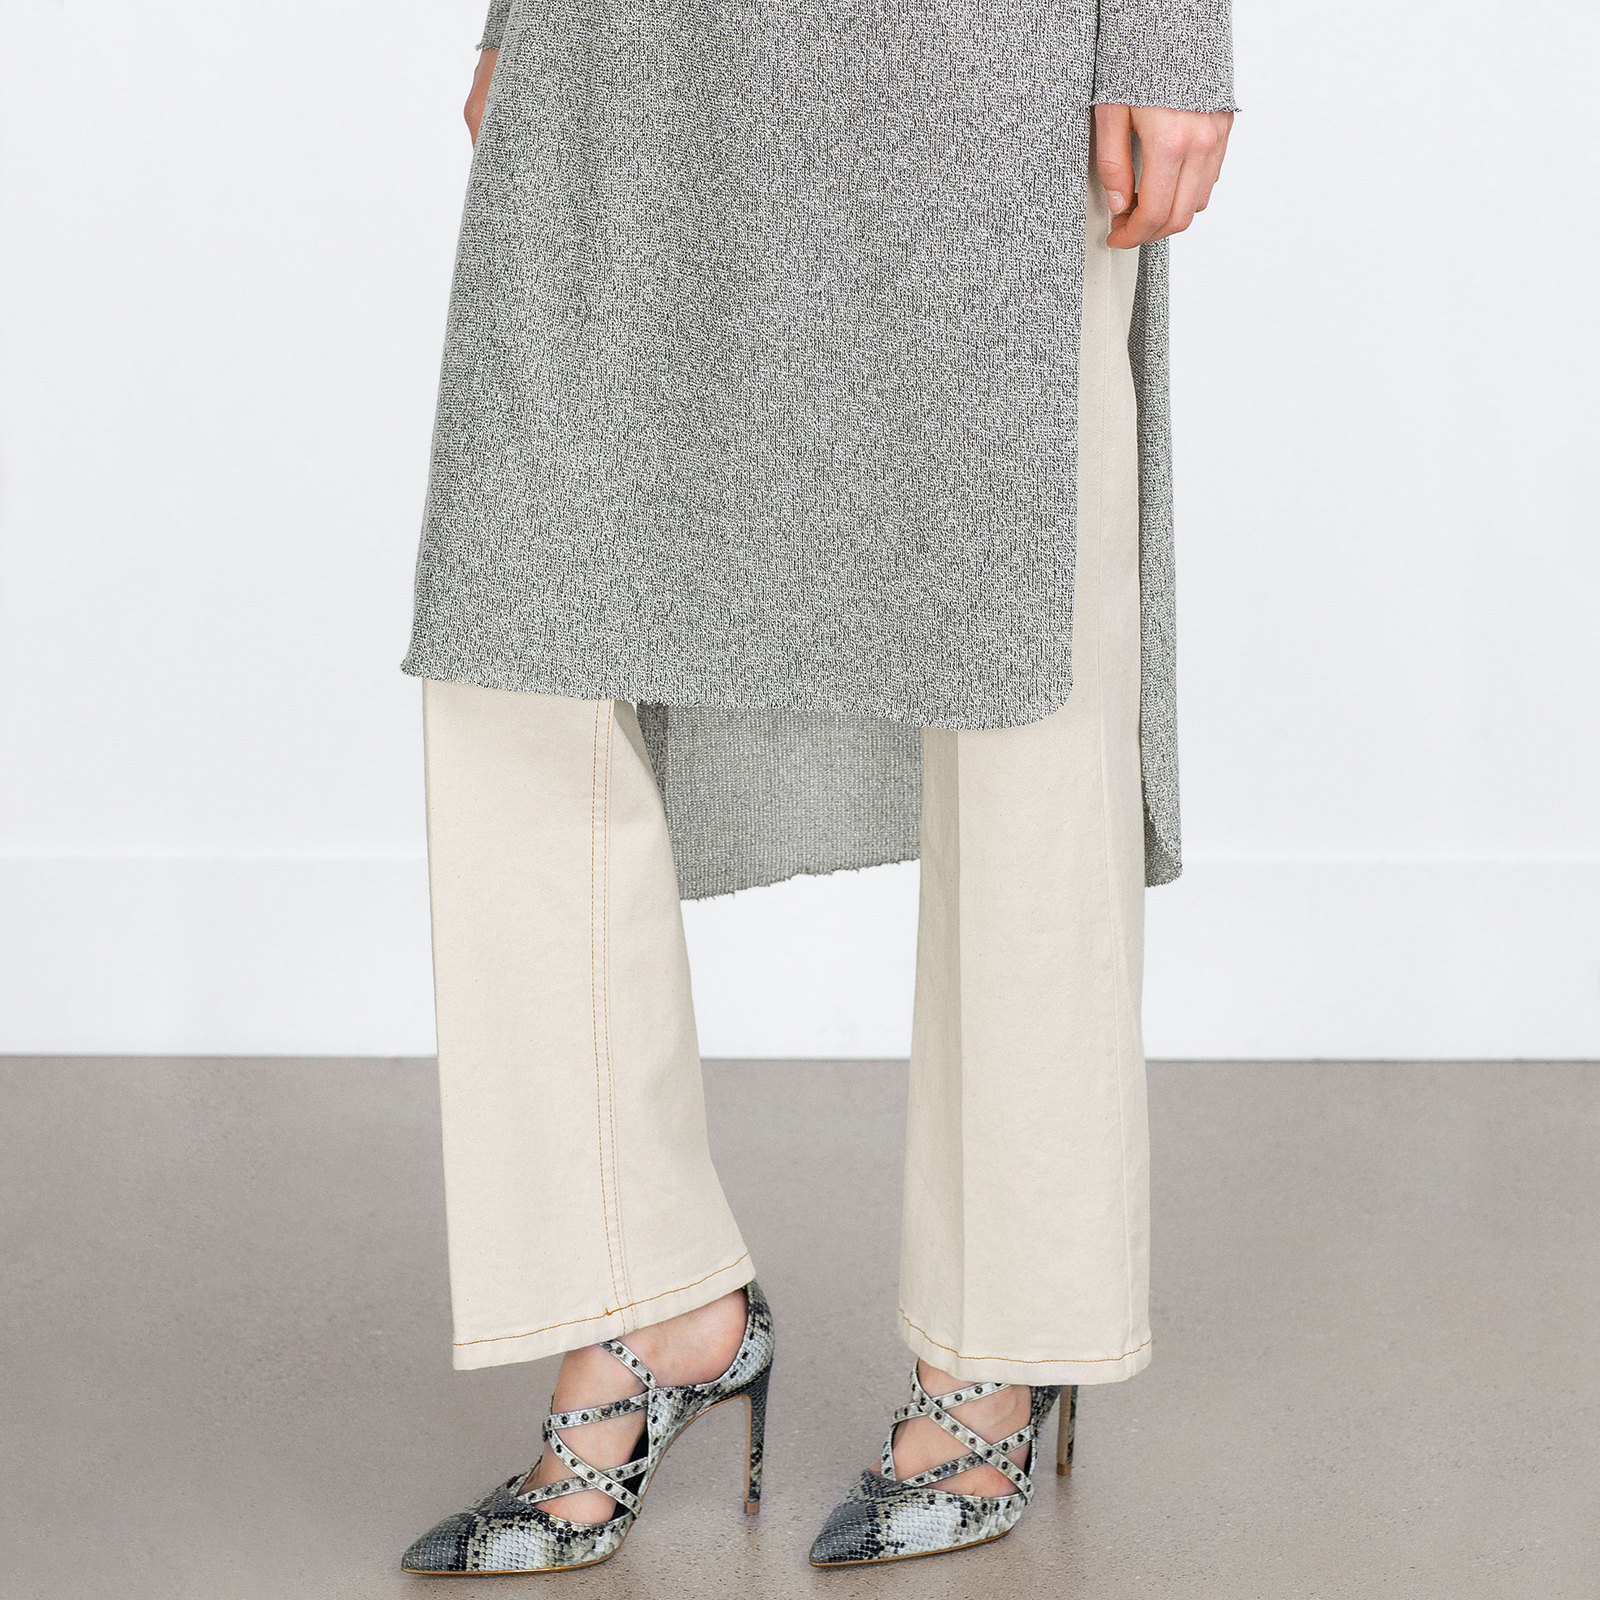 Zara női mintás magassarkú cipő 2015 fotója